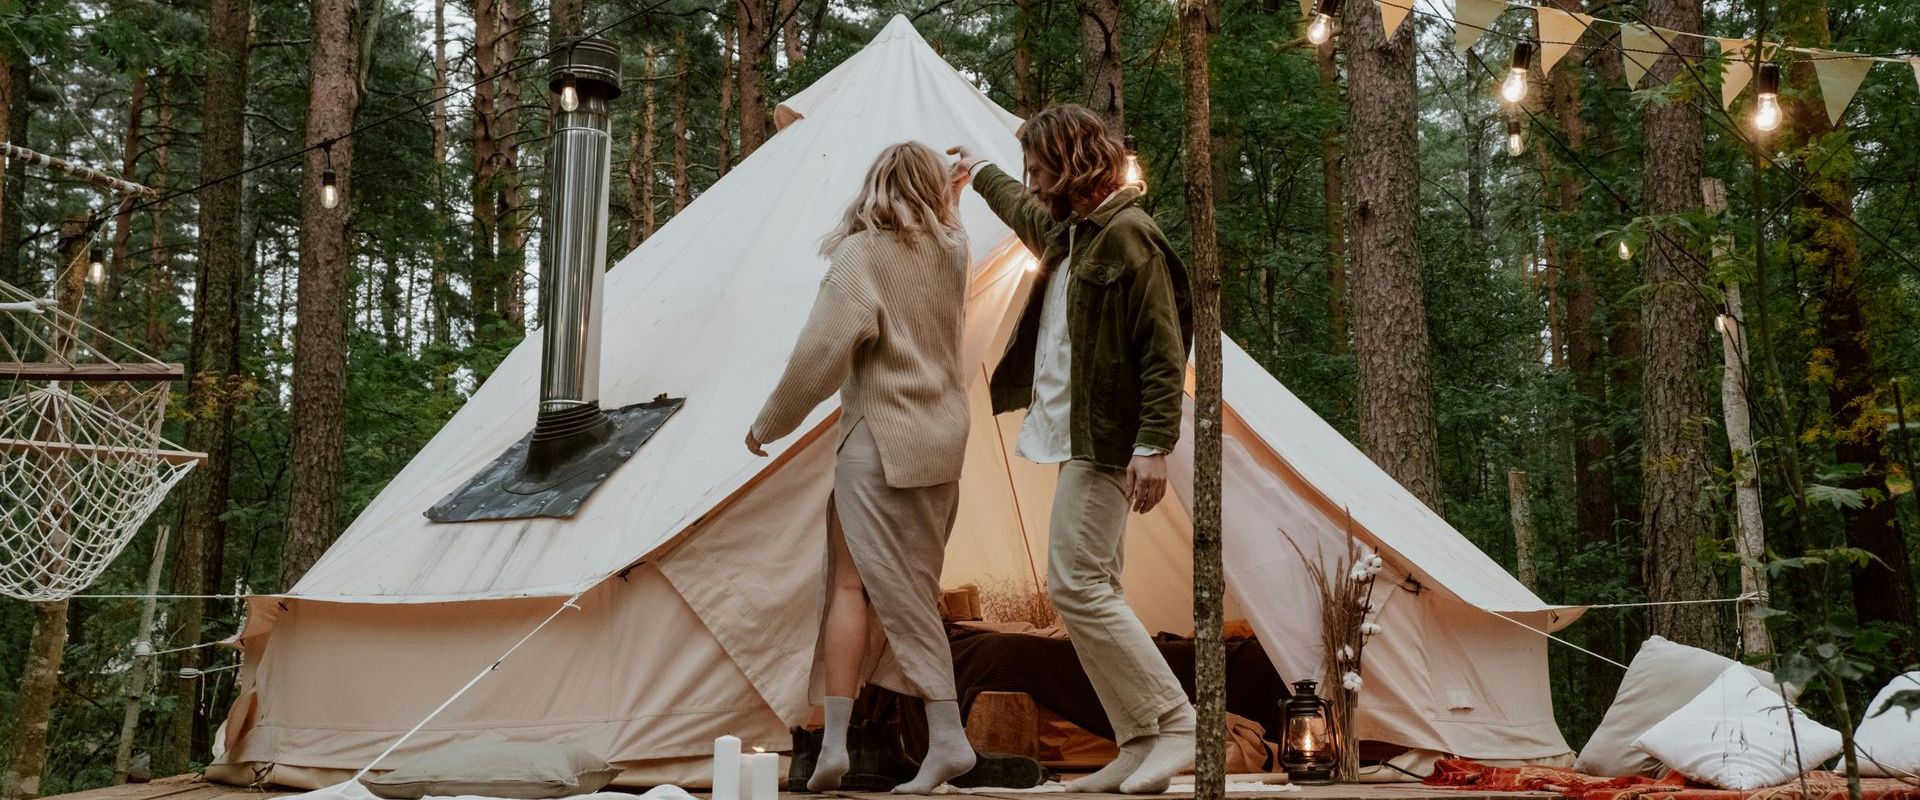 Social media en influencer marketing voor je camping: 5 tips